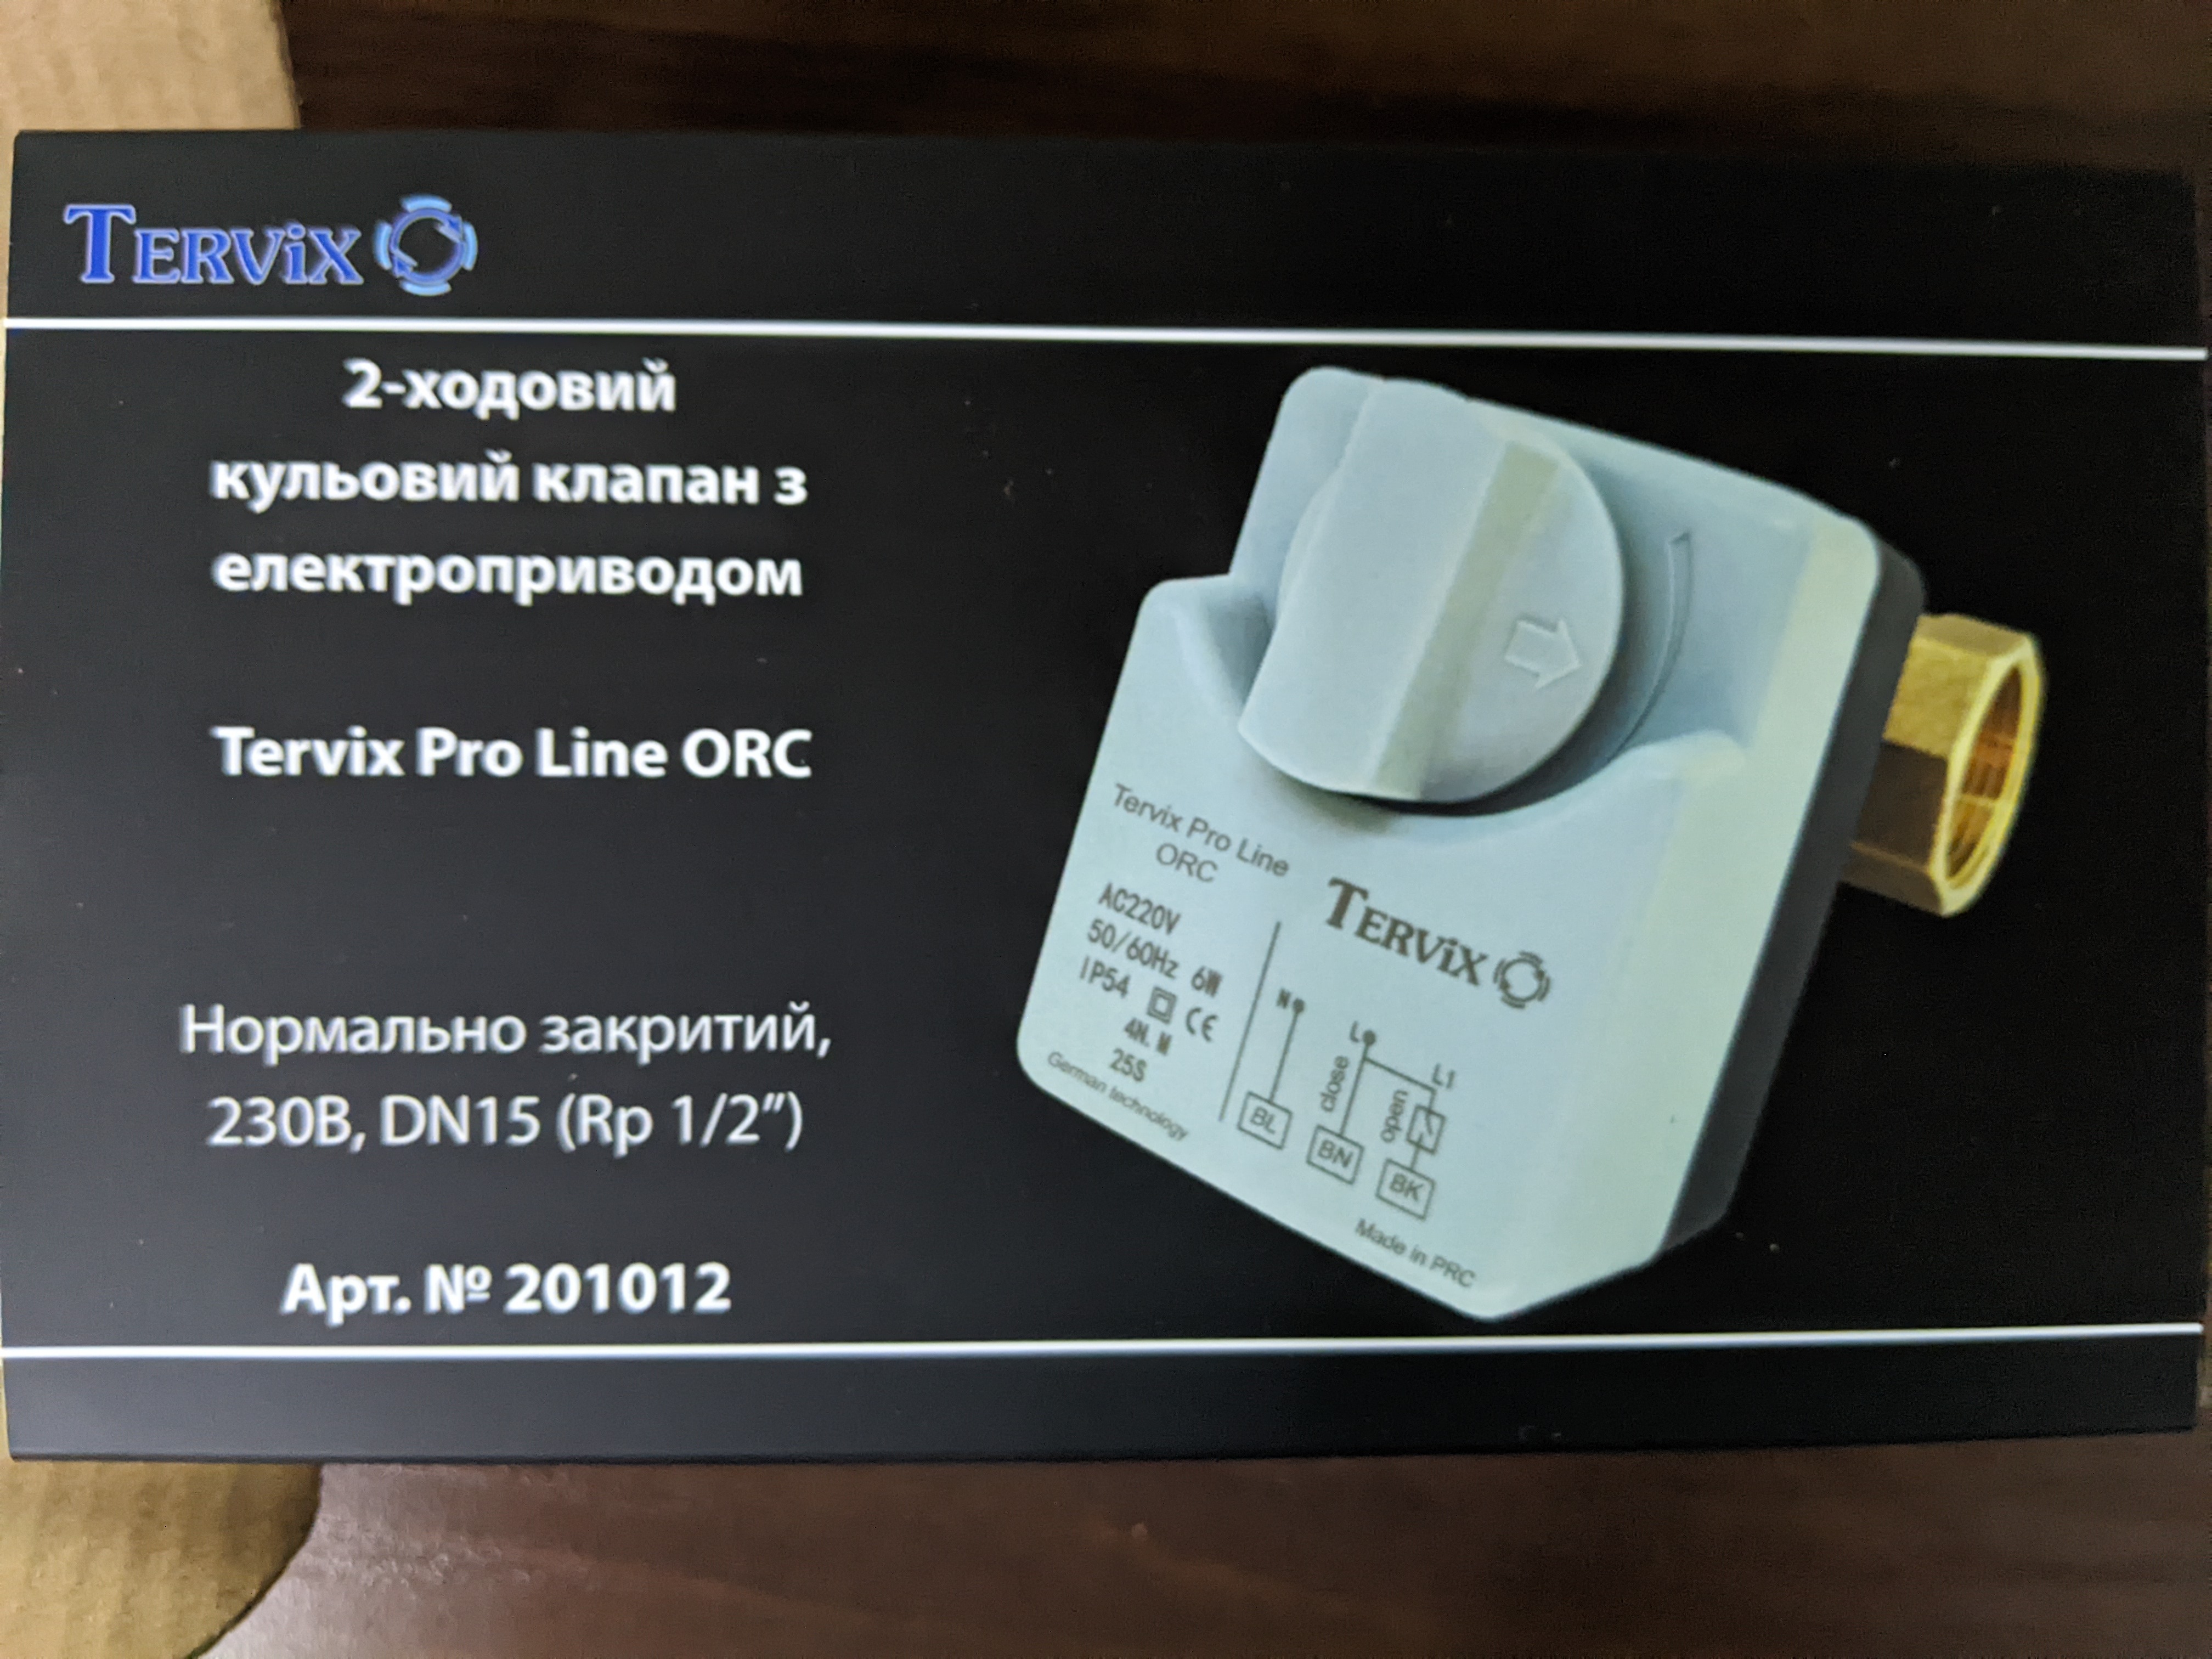 Фото №1 від покупця Роман до товару Tervix Pro Line ORC (нормально закритий, 230В) (DN15) 201012